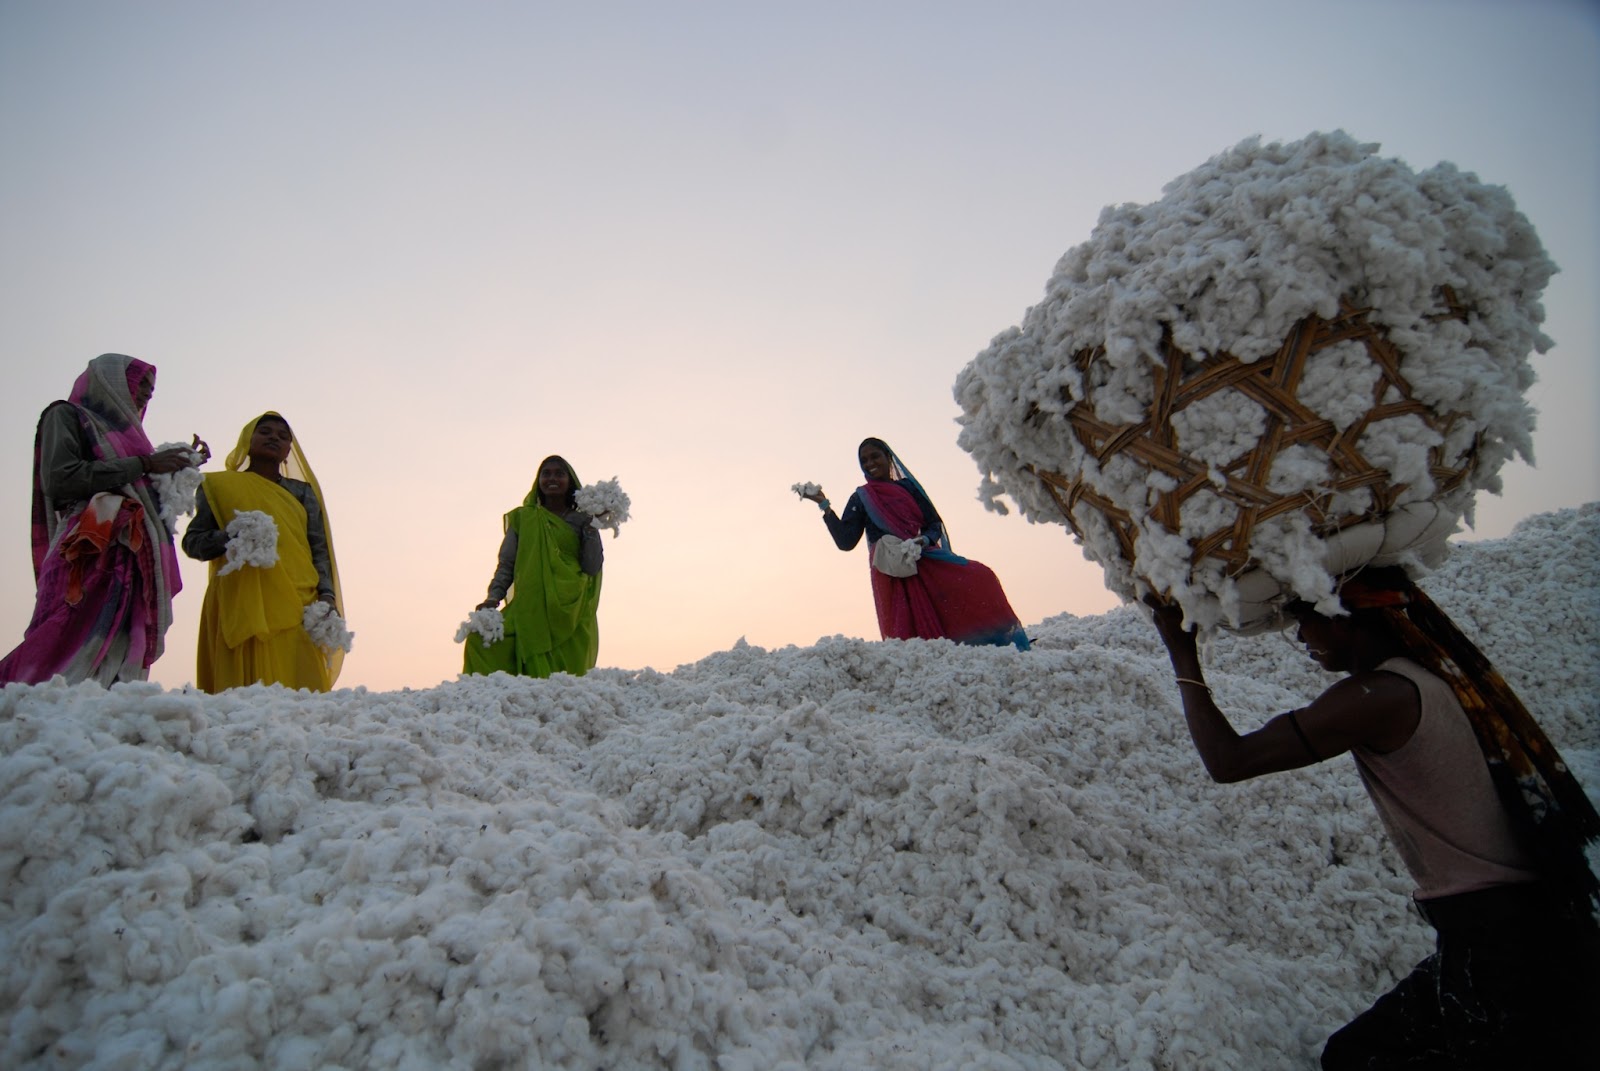 cotton hữu cơ organic cotton thân thiện môi trường